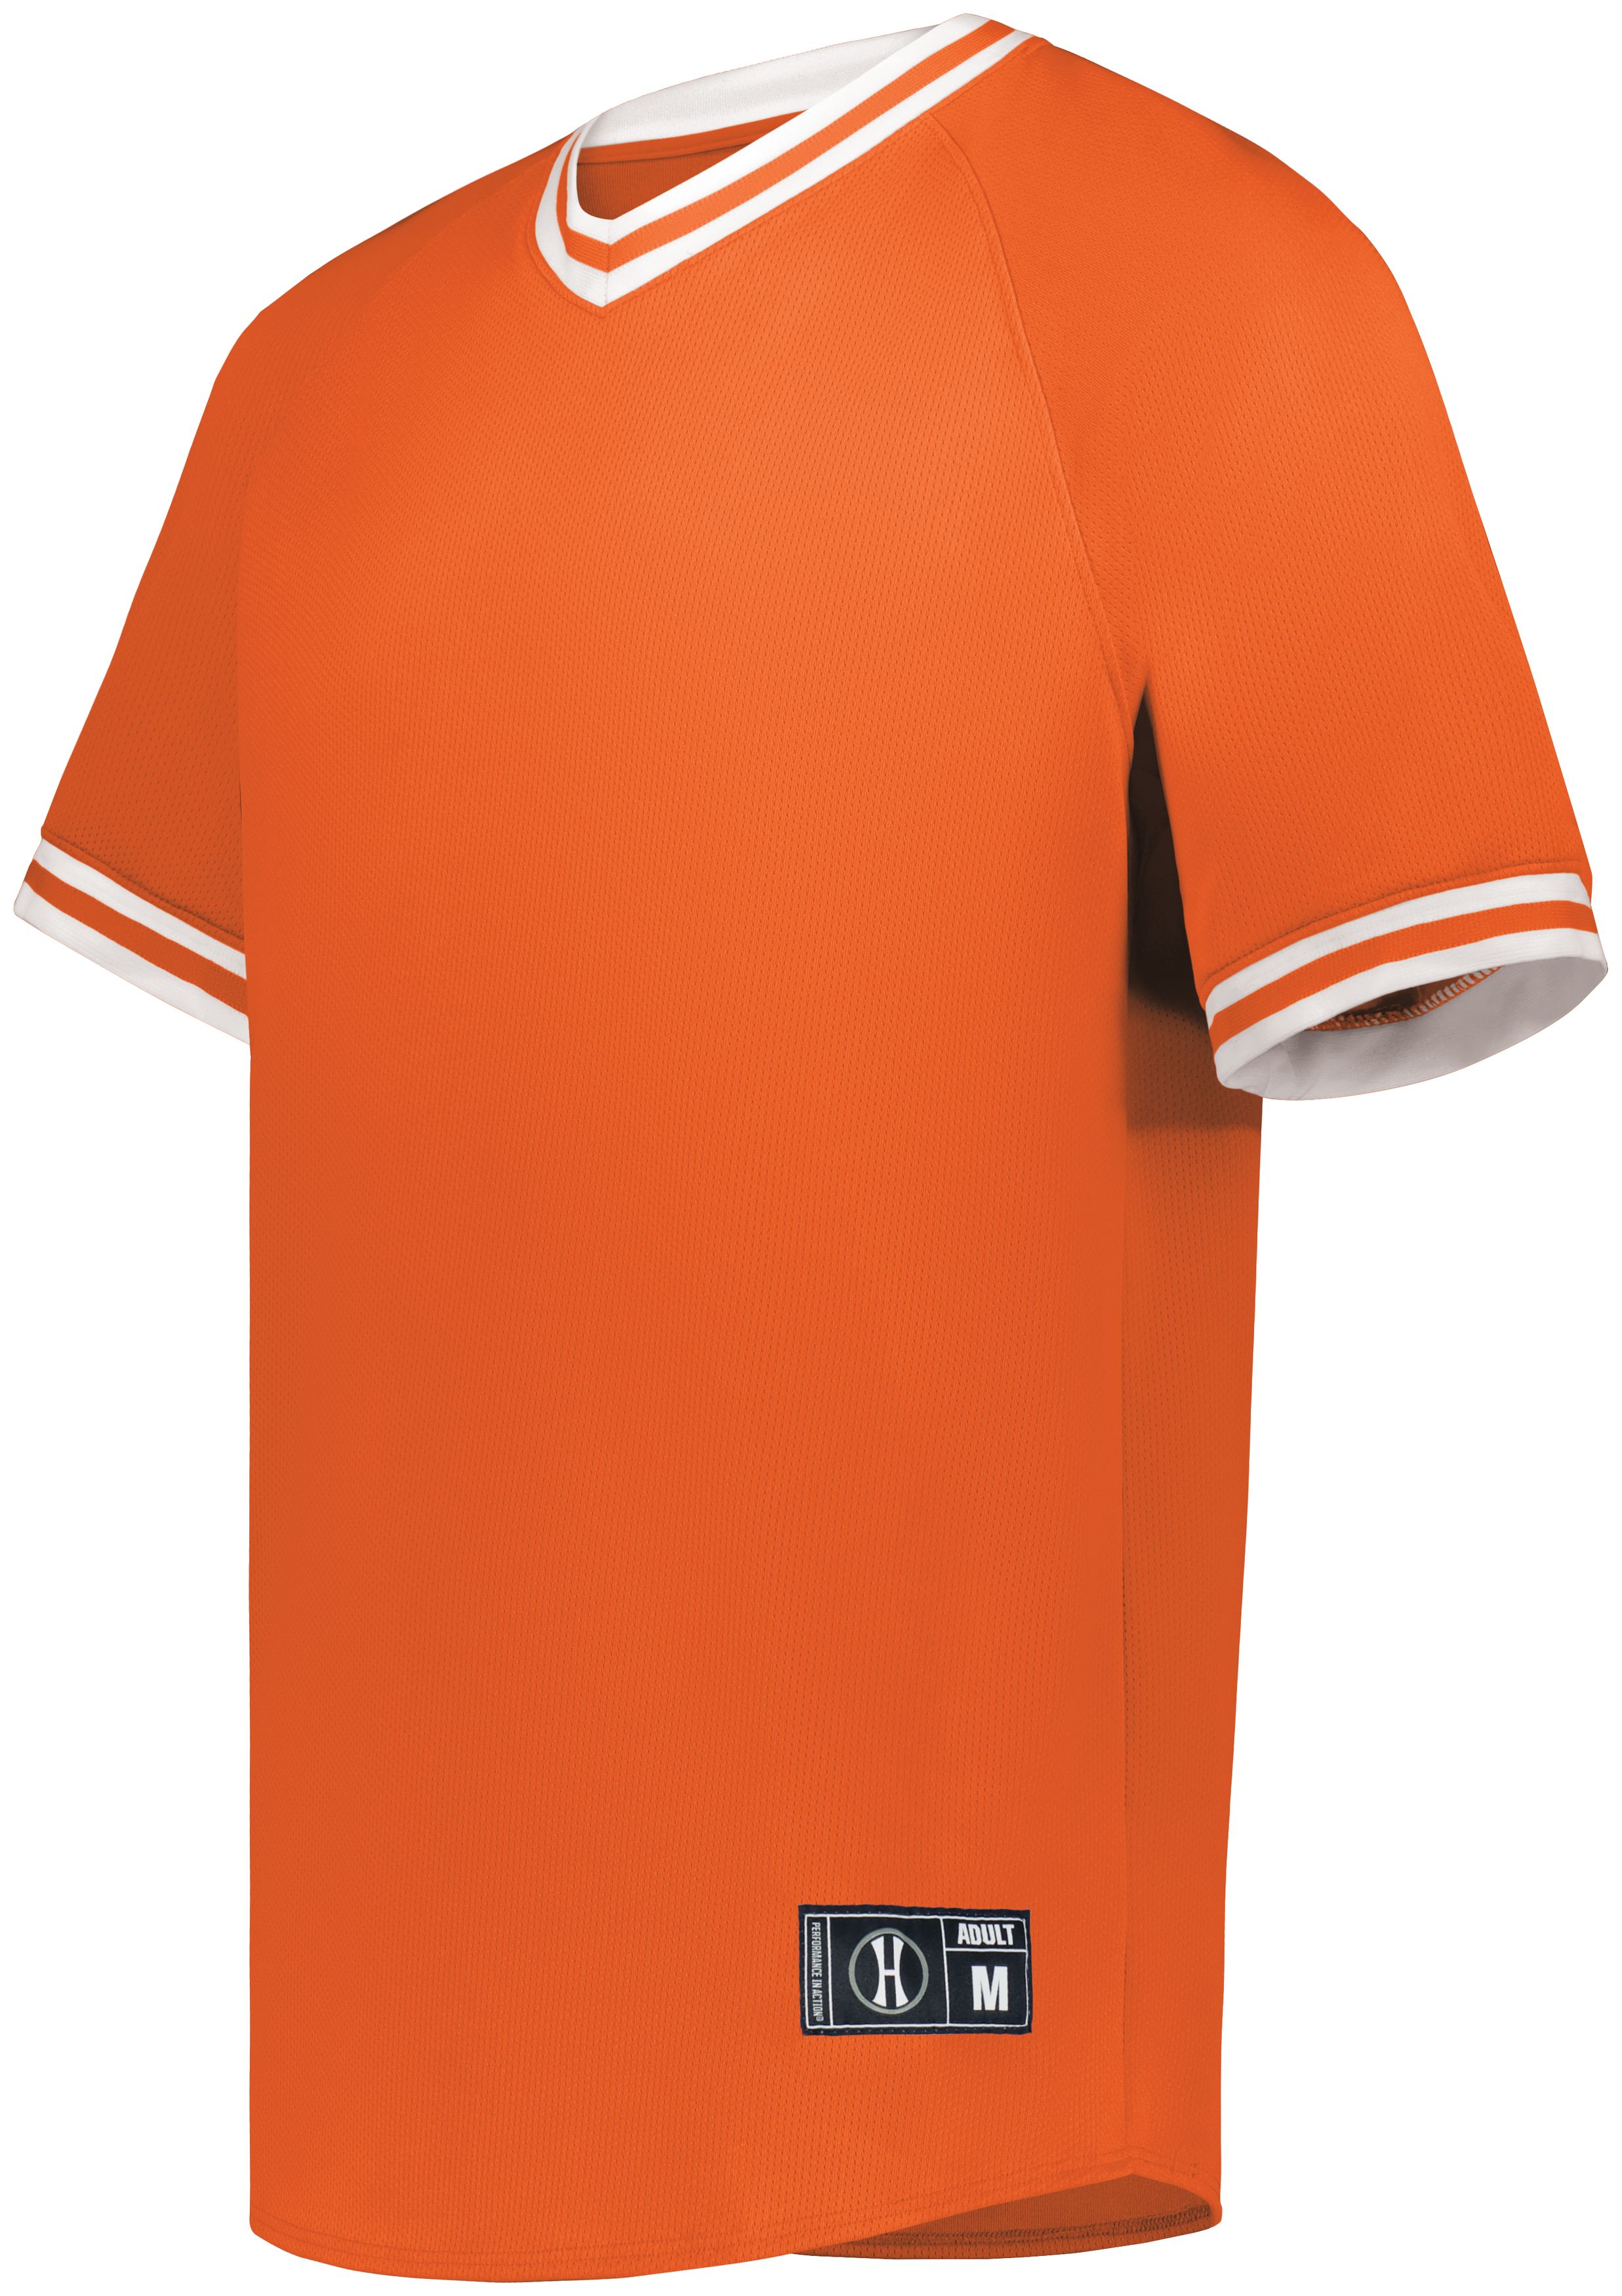 Holloway 221021 - Retro V-Neck Baseball Jersey $21.84 - T-Shirts